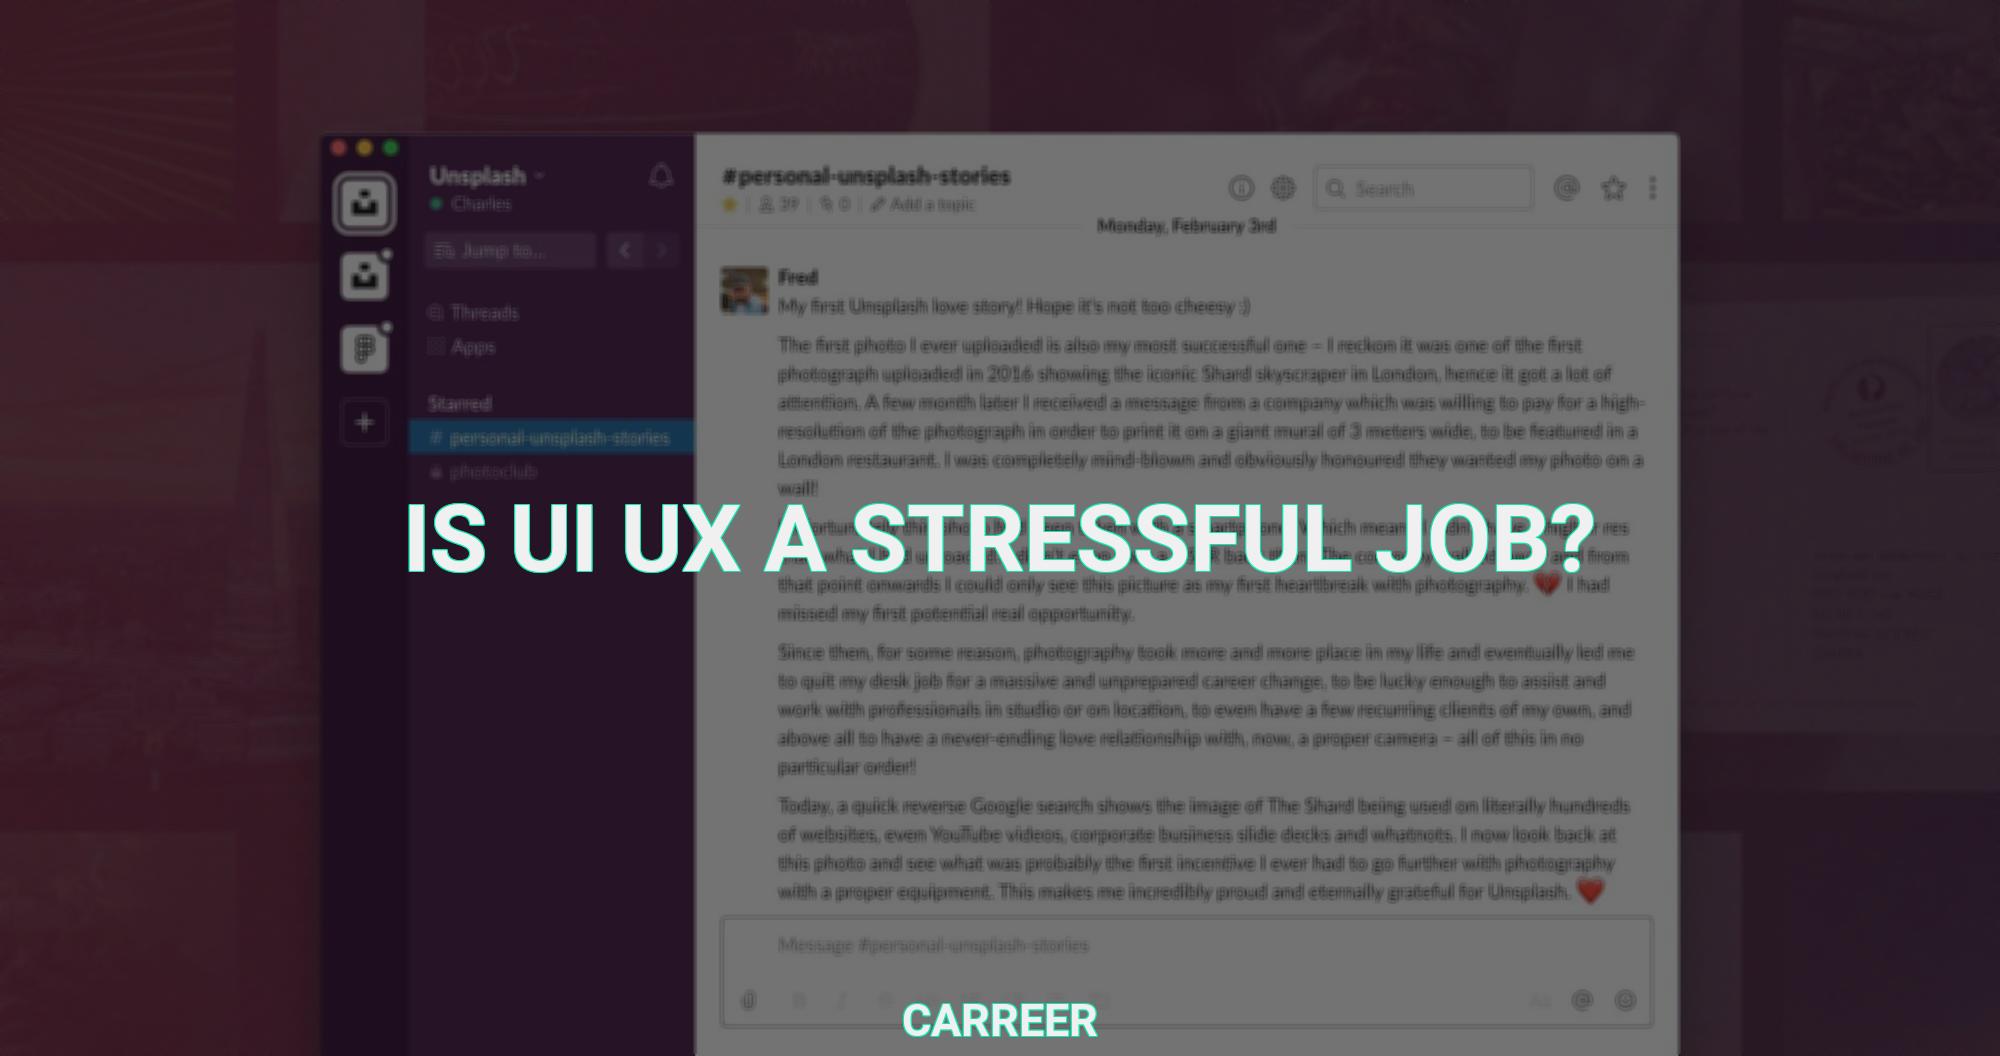 Is ui ux a stressful job?